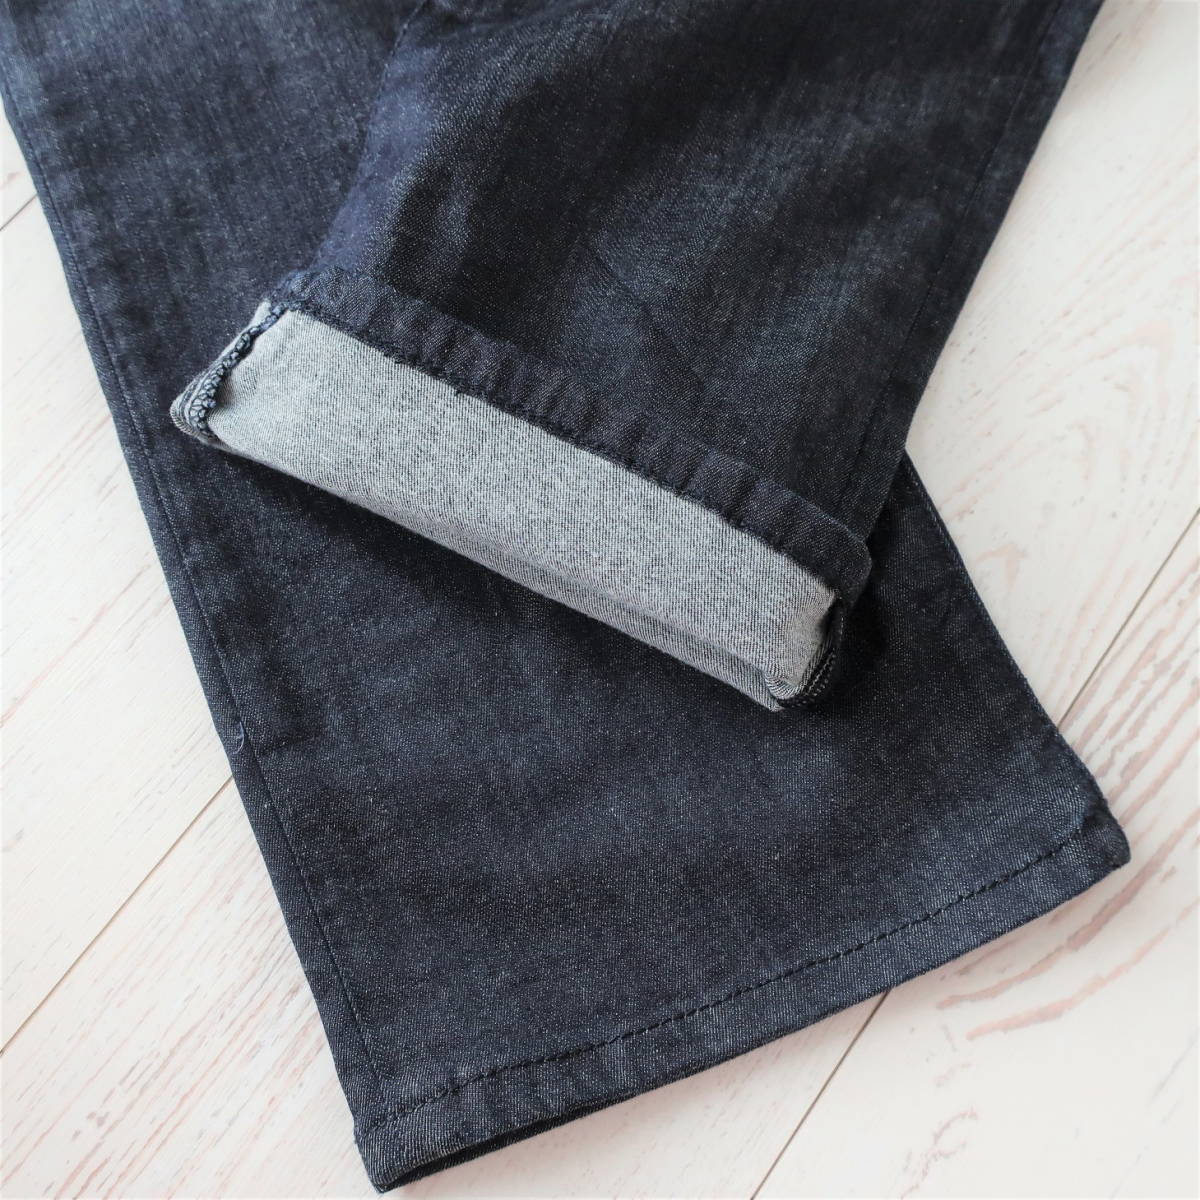  новый товар EMPORIO ARMANI Emporio Armani стрейч постоянный Fit распорка джинсы Denim индиго мужской W29 S размер 